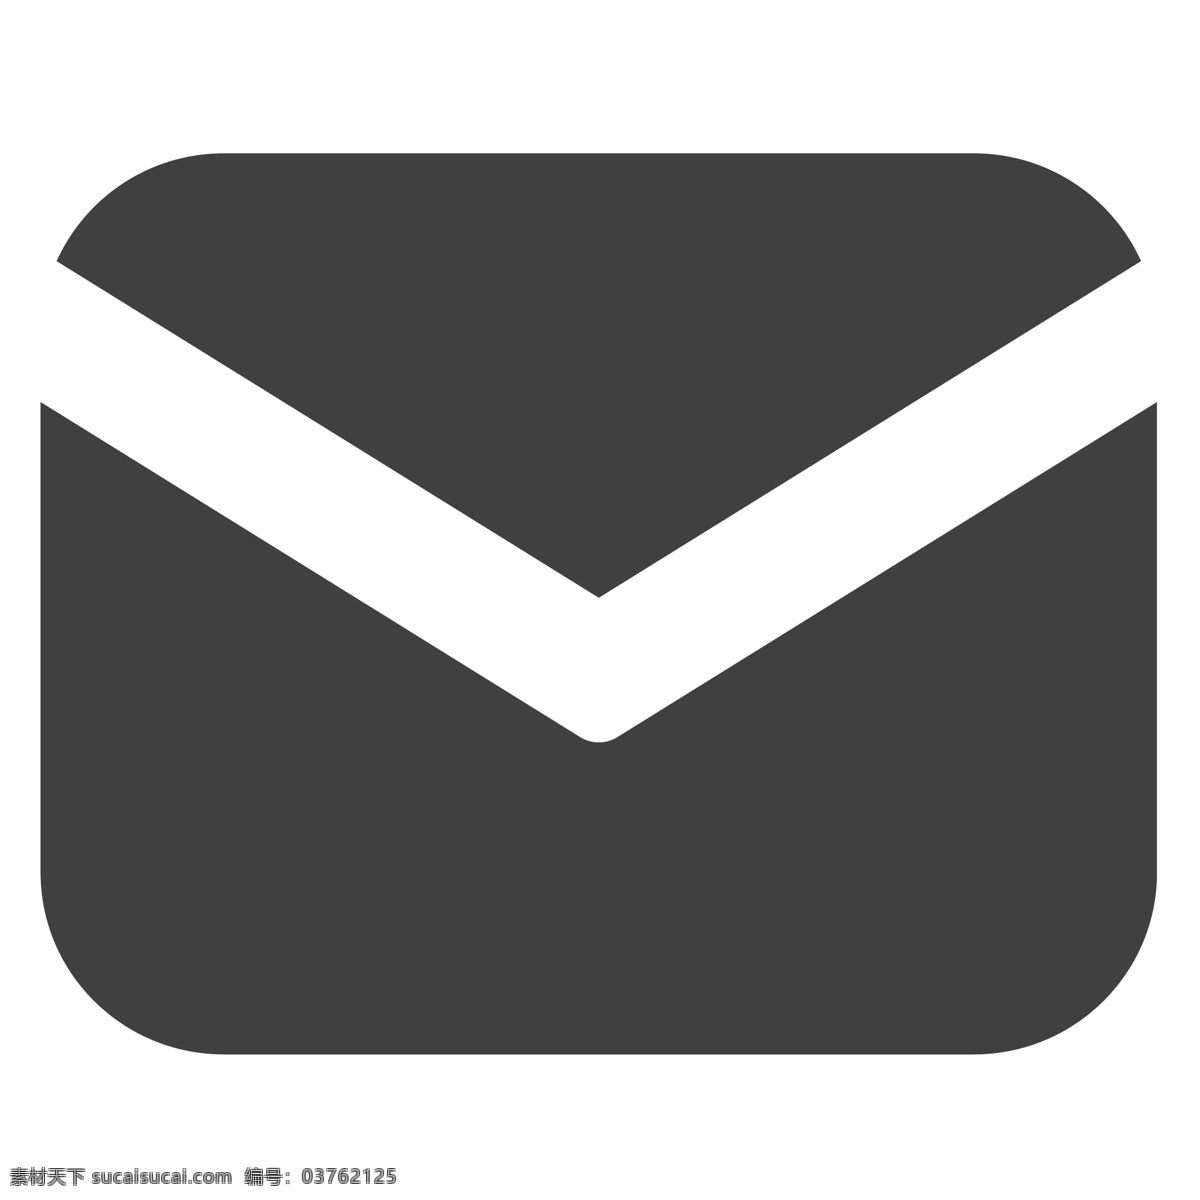 一个办公信封 信封 办公 卡通 生活图标 卡通图标 黑色的图标 手机图标 智能图标设计